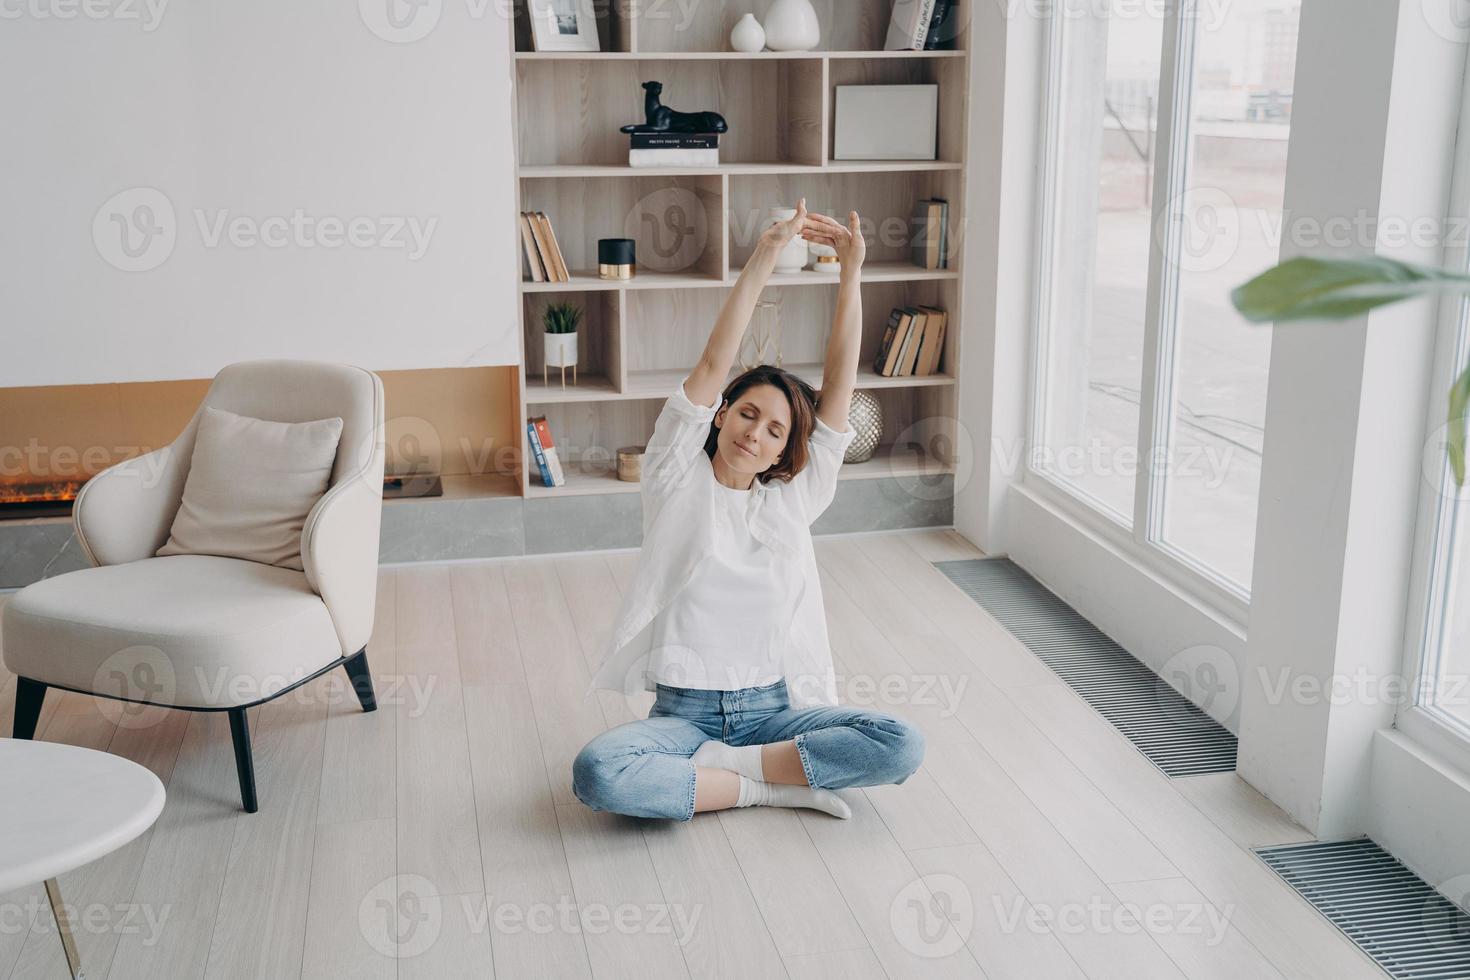 kvinna praktiserande yoga på golv i levande rum, stretching vapen upp. friska livsstil, wellness foto